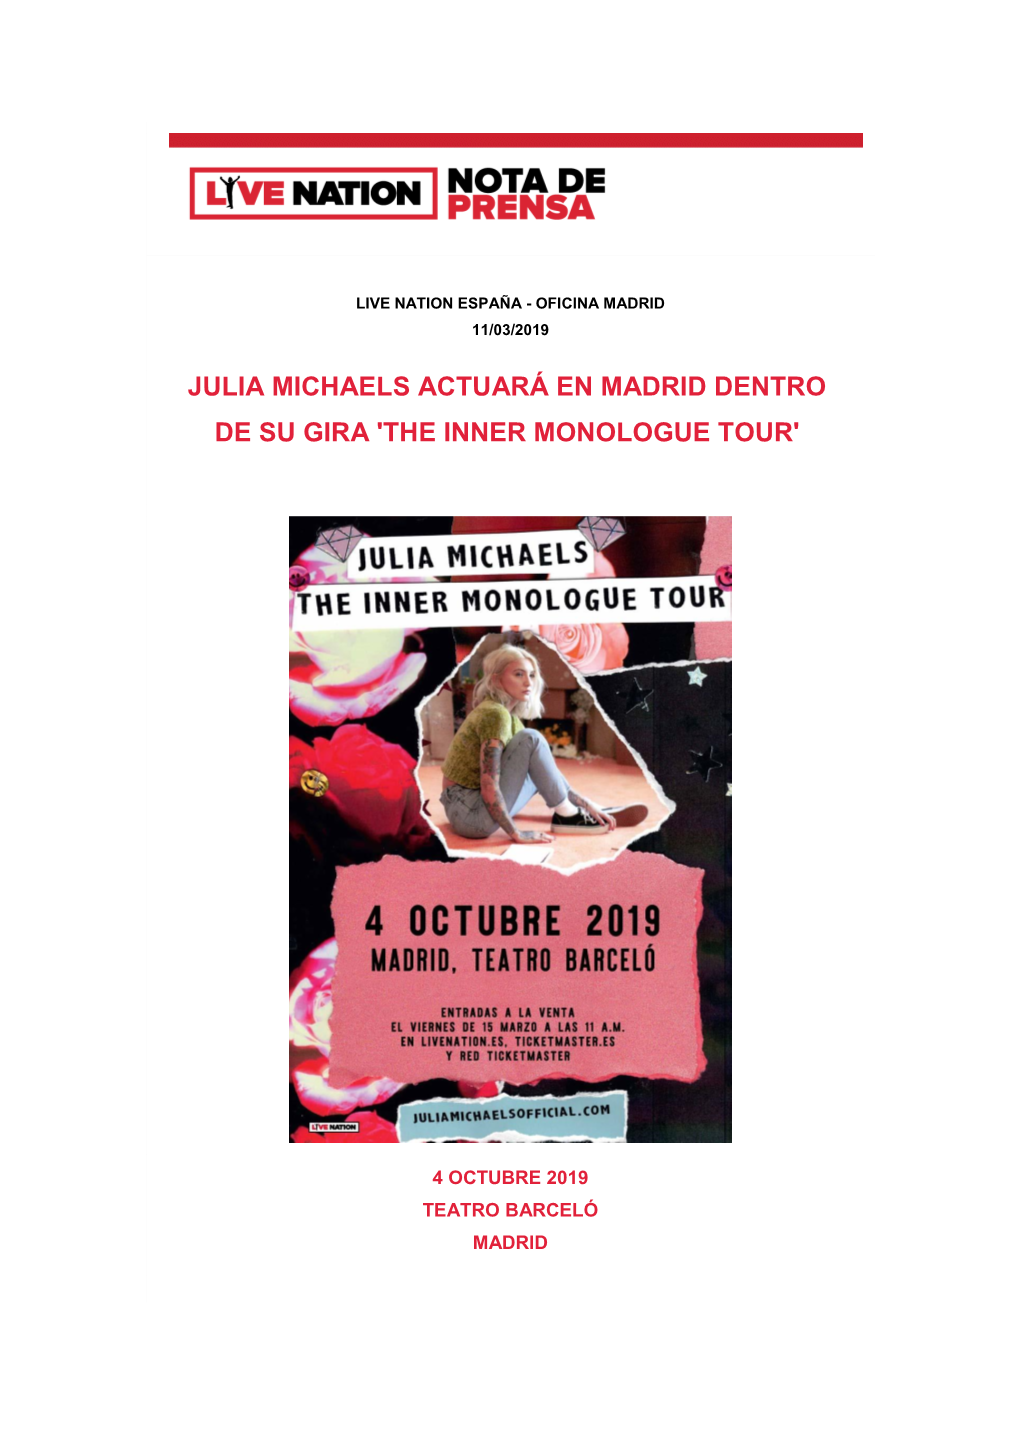 Julia Michaels Actuará En Madrid Dentro De Su Gira 'The Inner Monologue Tour'